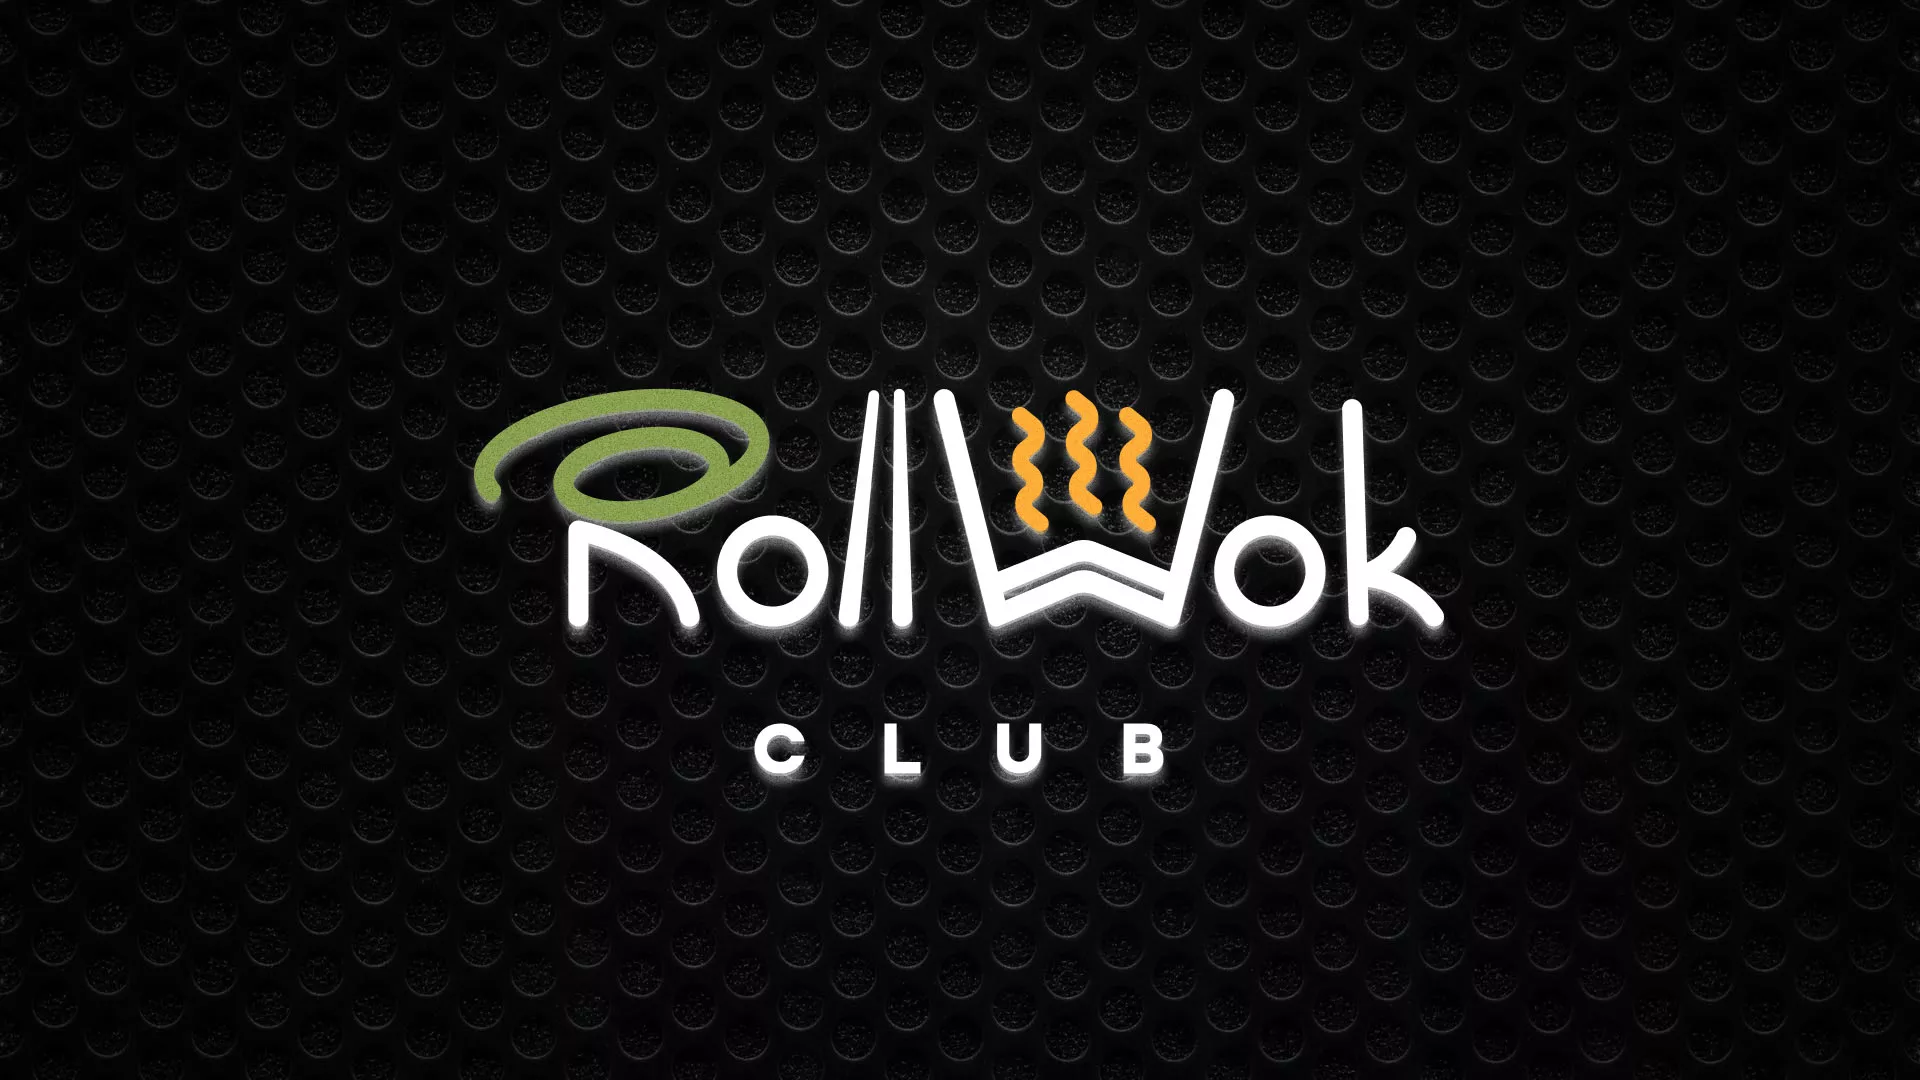 Брендирование торговых точек суши-бара «Roll Wok Club» в Щиграх